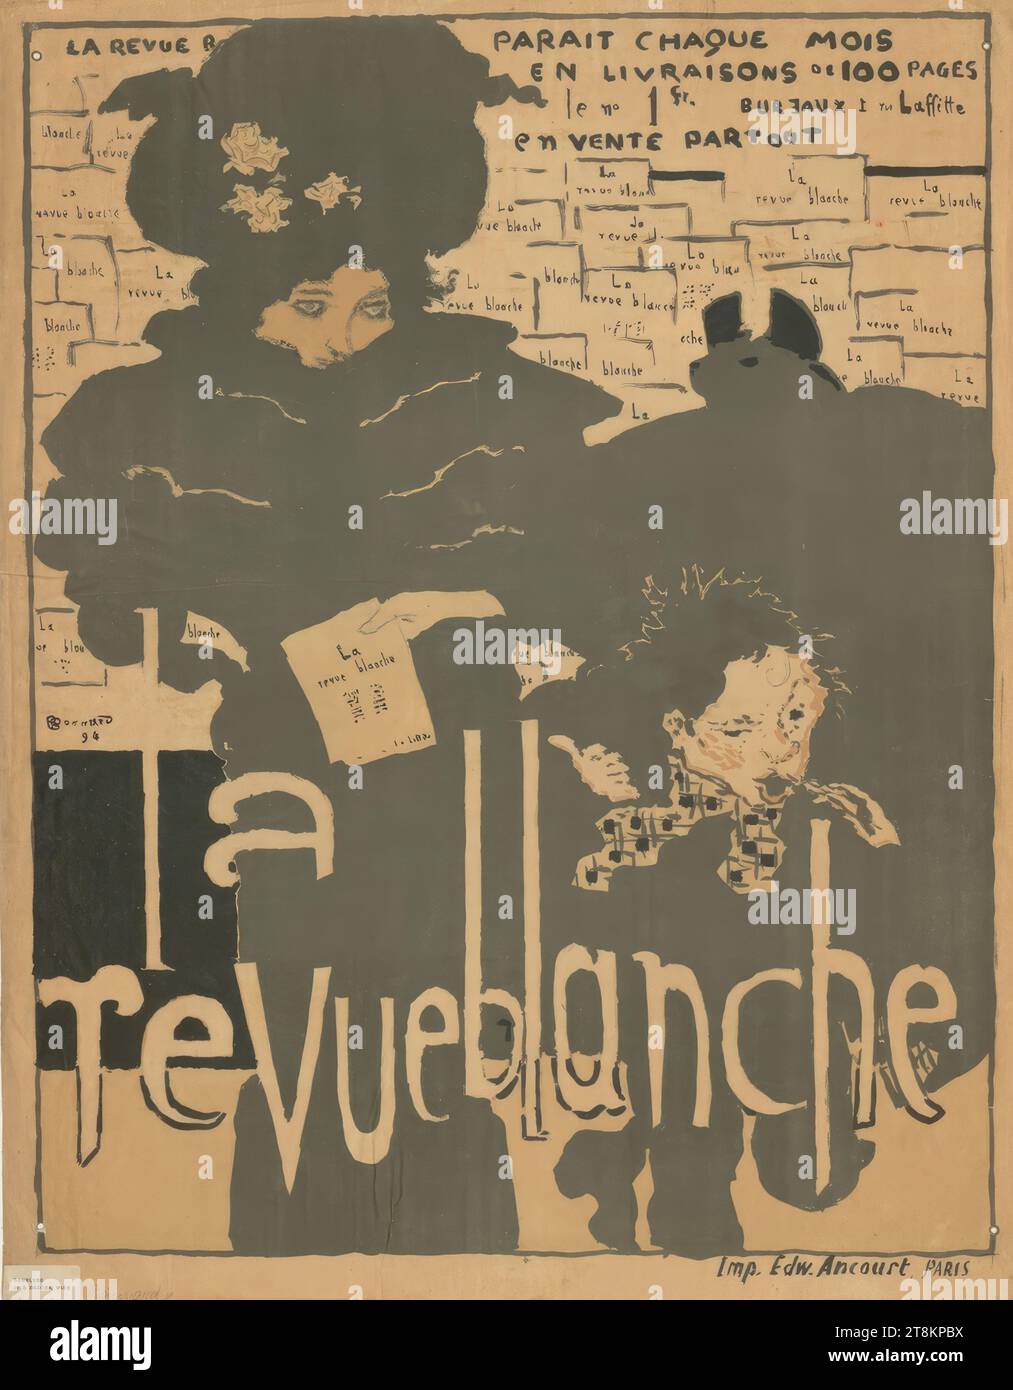 La revue blanche, Pierre Bonnard, Fontenay-aux-Roses 1867 - 1947 Le Cannet, 1894, print, color lithograph, 80 x 62 cm, above: 'LA REVUE B[LANCHE] PARAIT CHAQUE MOIS / EN LIVRAISONS DE 100 PAGES / le n° 1 Fr. Bureaux 1 rue Lafitte 7 / en VENTE PARTOUT'; on the magazines shown: 'La revue blanche'; Wed. left: 'Bonnard / 94'; below: 'la / revue blanche'; bottom right: 'Imp. Edw. 'Ancourt Paris Stock Photo